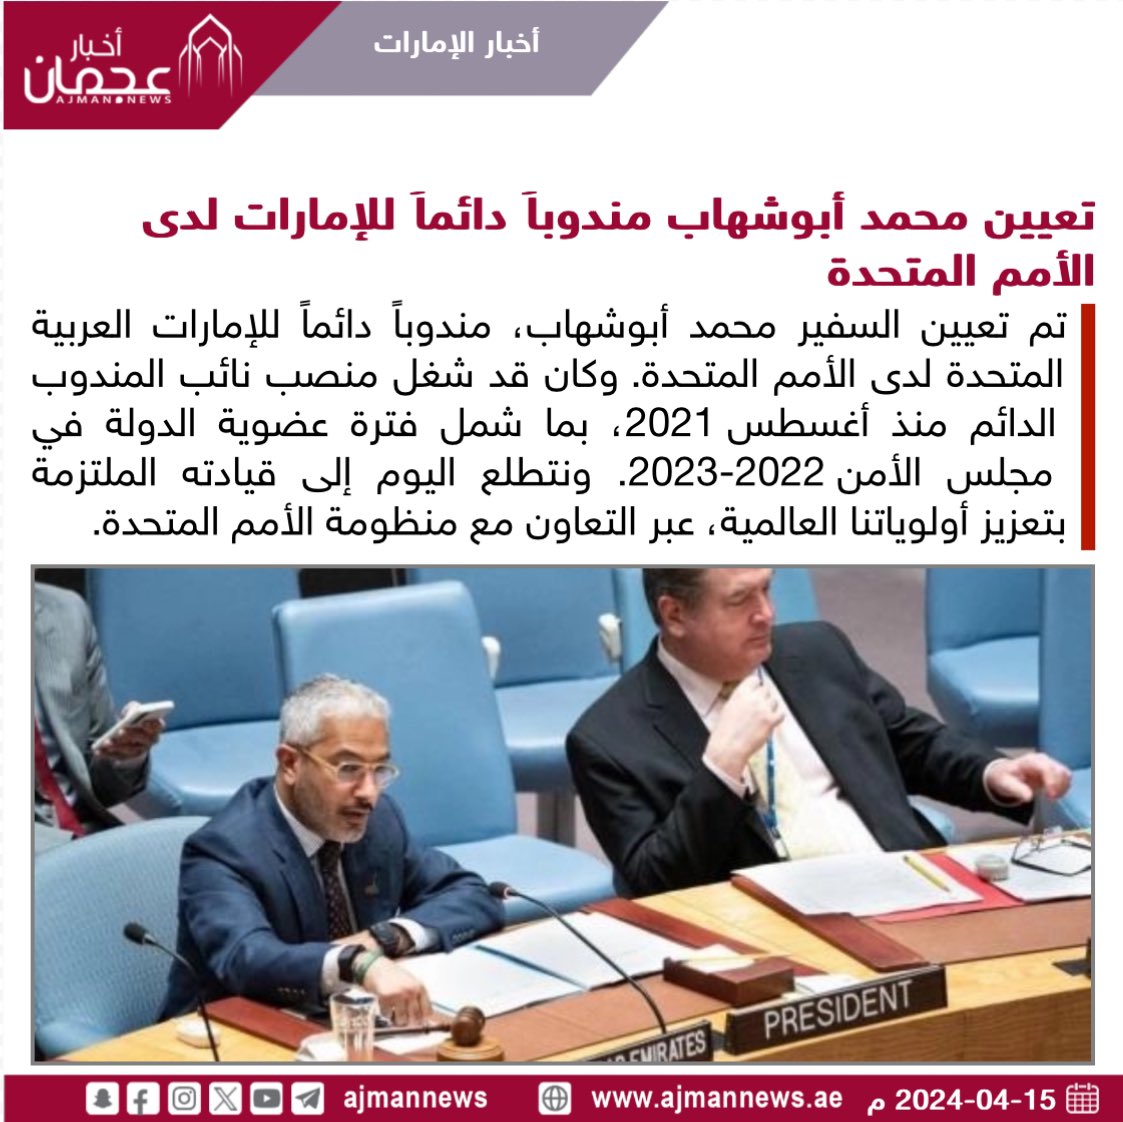 تعيين محمد أبوشهاب مندوباً دائماً للإمارات لدى الأمم المتحدة ajmanevents.ae/120918 #أخبار_الإمارات  #أخبار  #أخبار_اليوم  #أخبار_عربية  #مركز_الأخبار